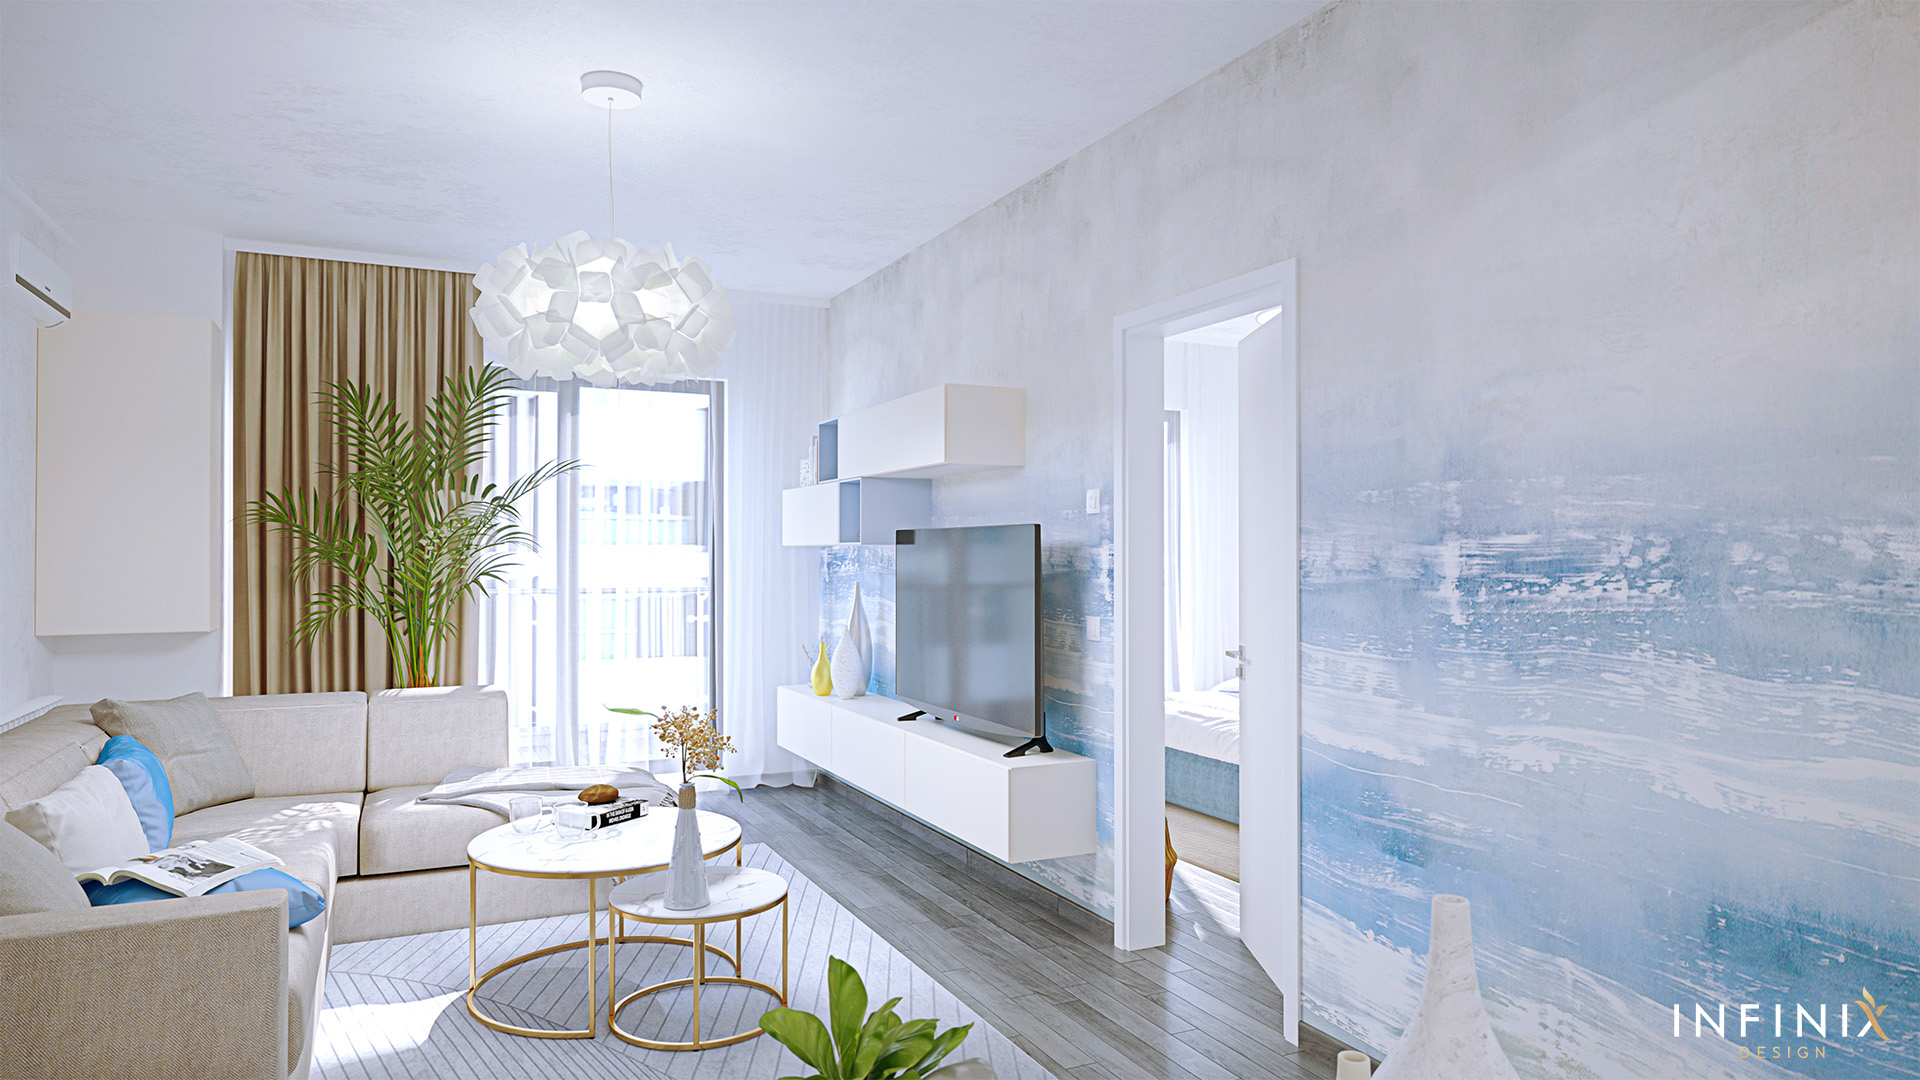 007.01_infinix design interior_apartament_living bucatarie